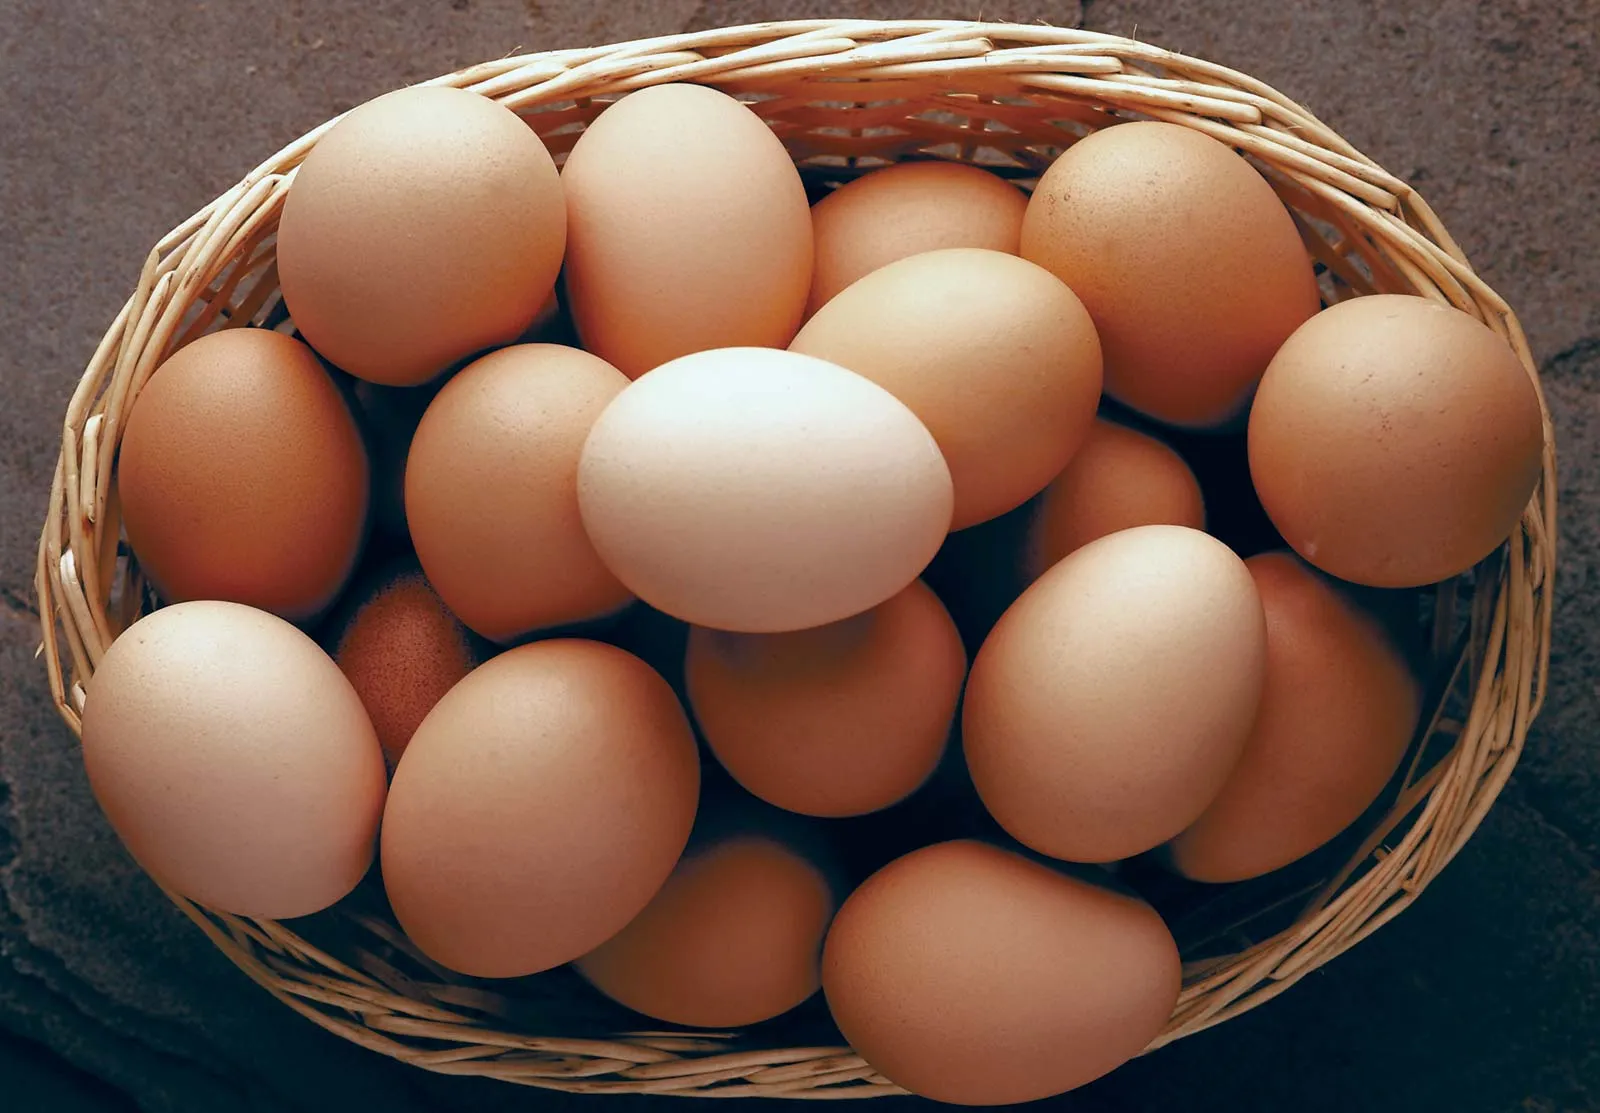 Nutrients In Eggs